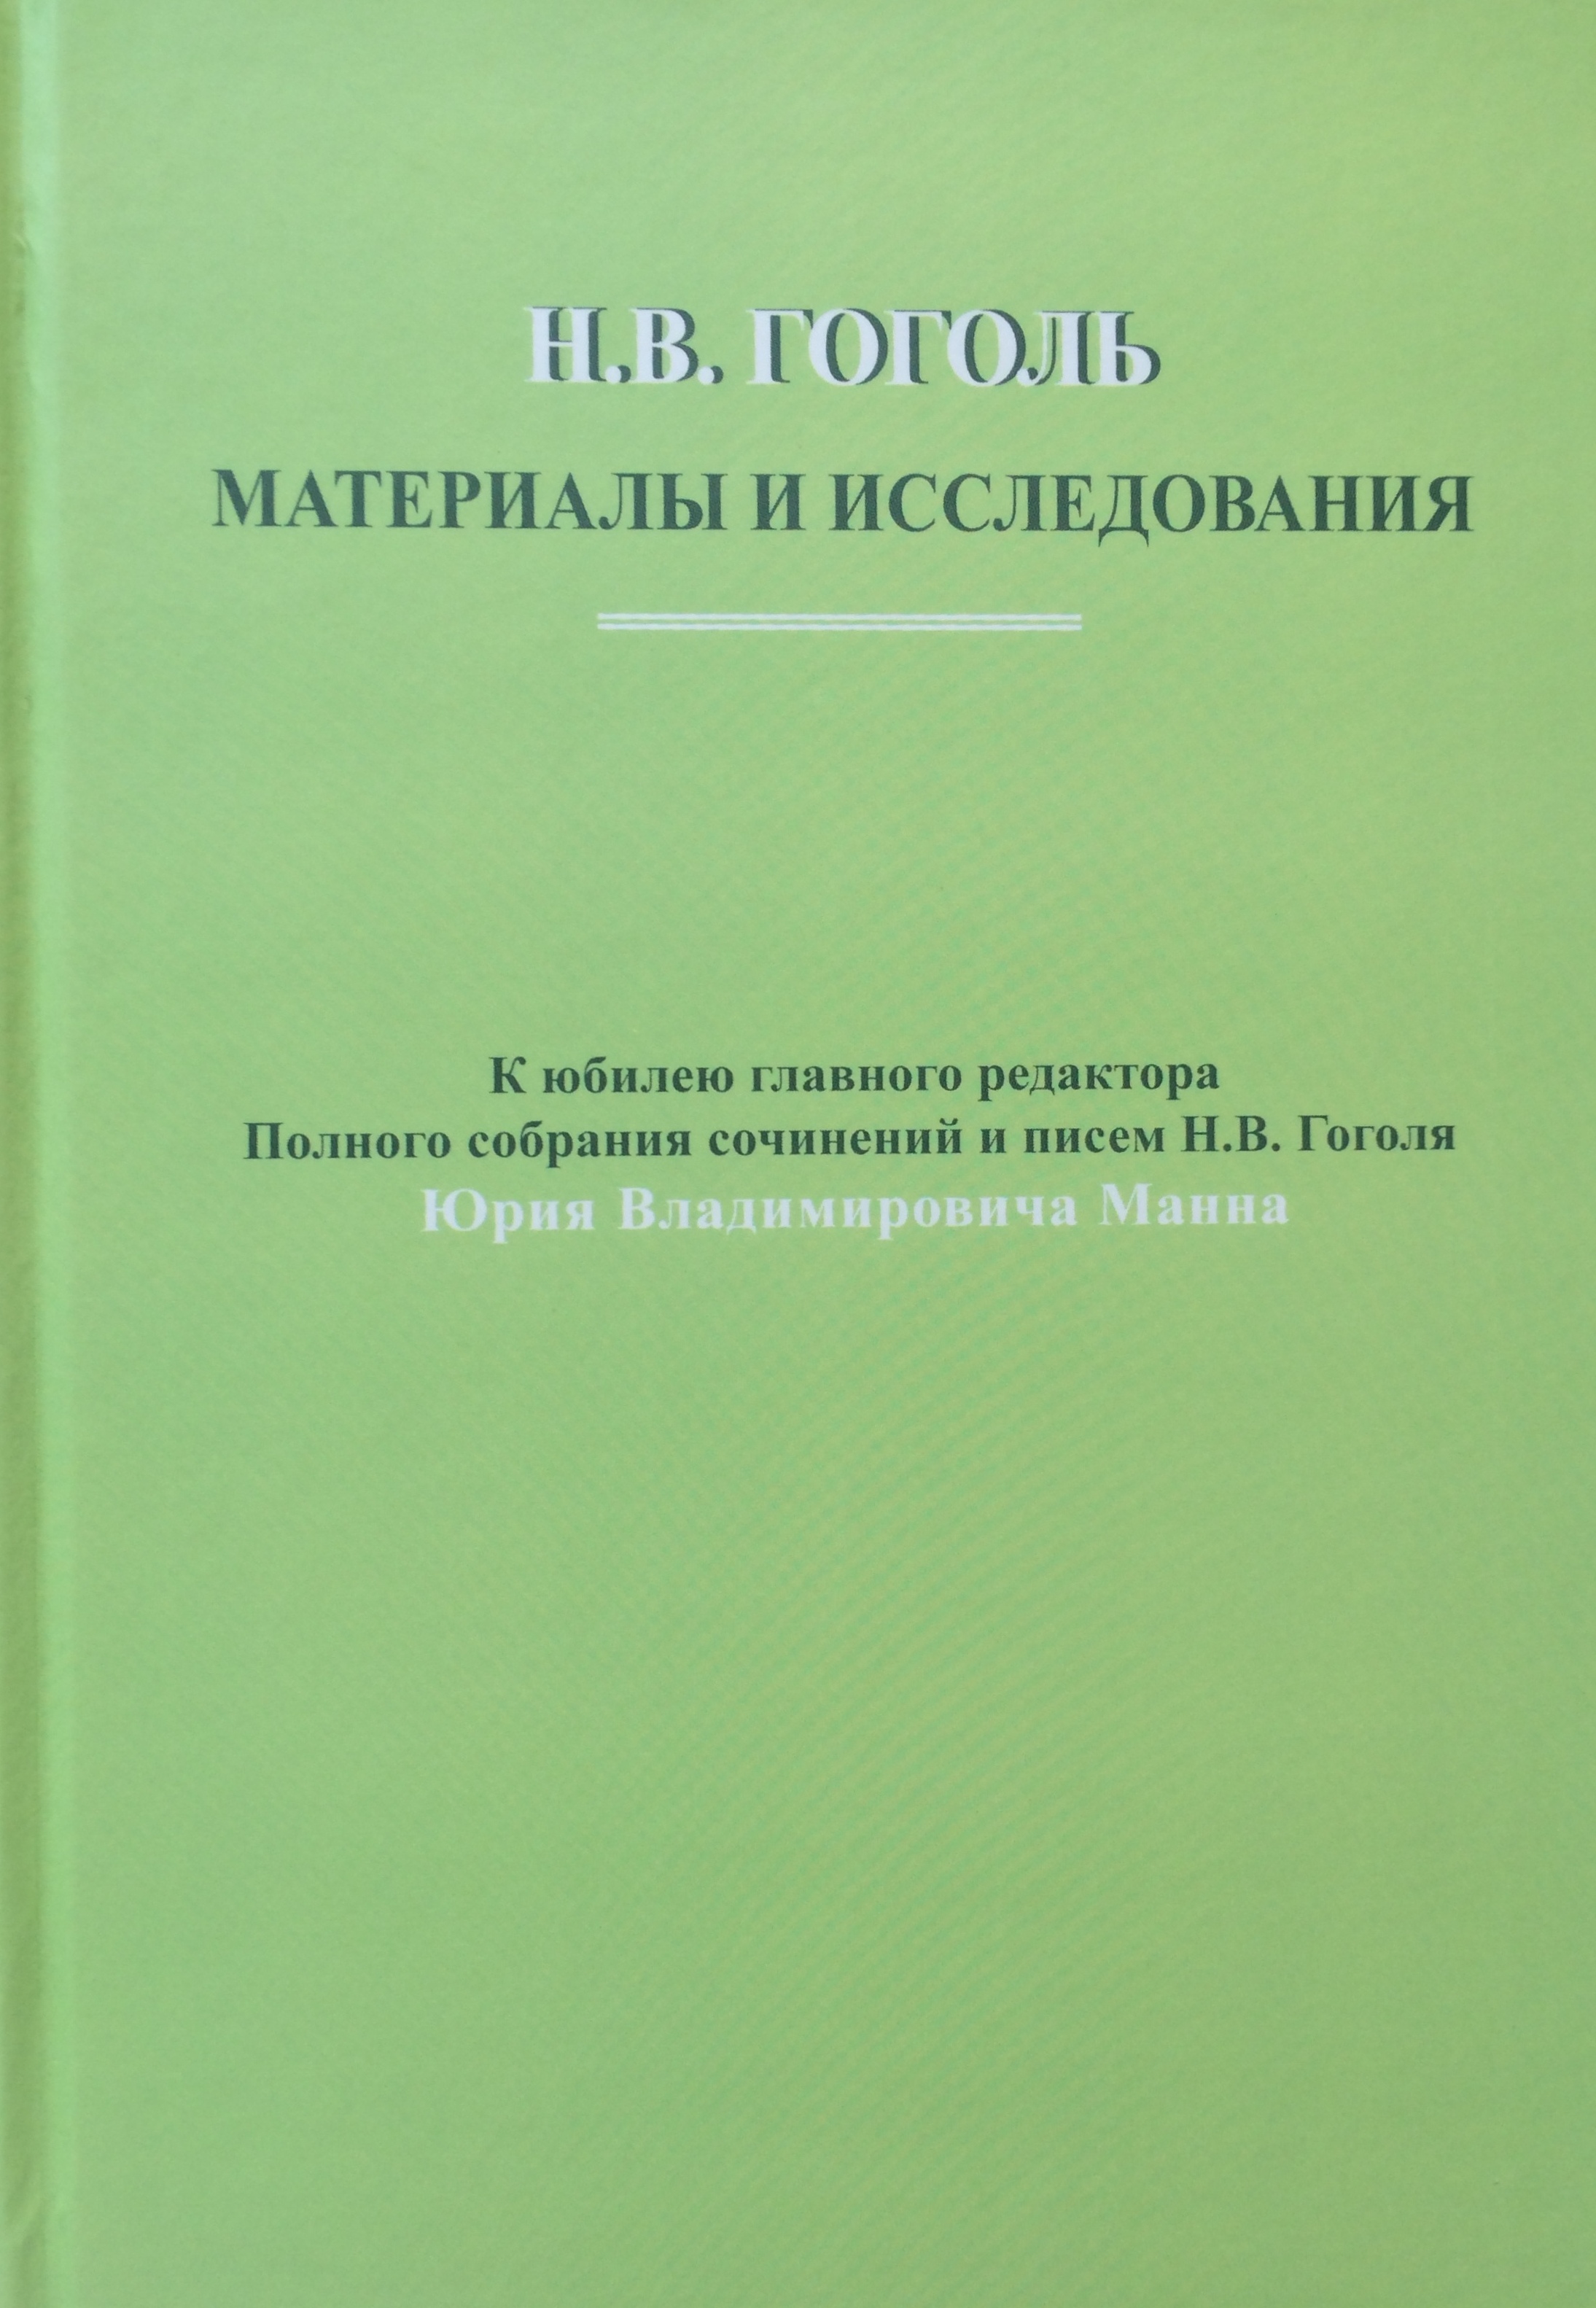 Cover of Н.В. Гоголь: Материалы и исследования. Выпуск 4